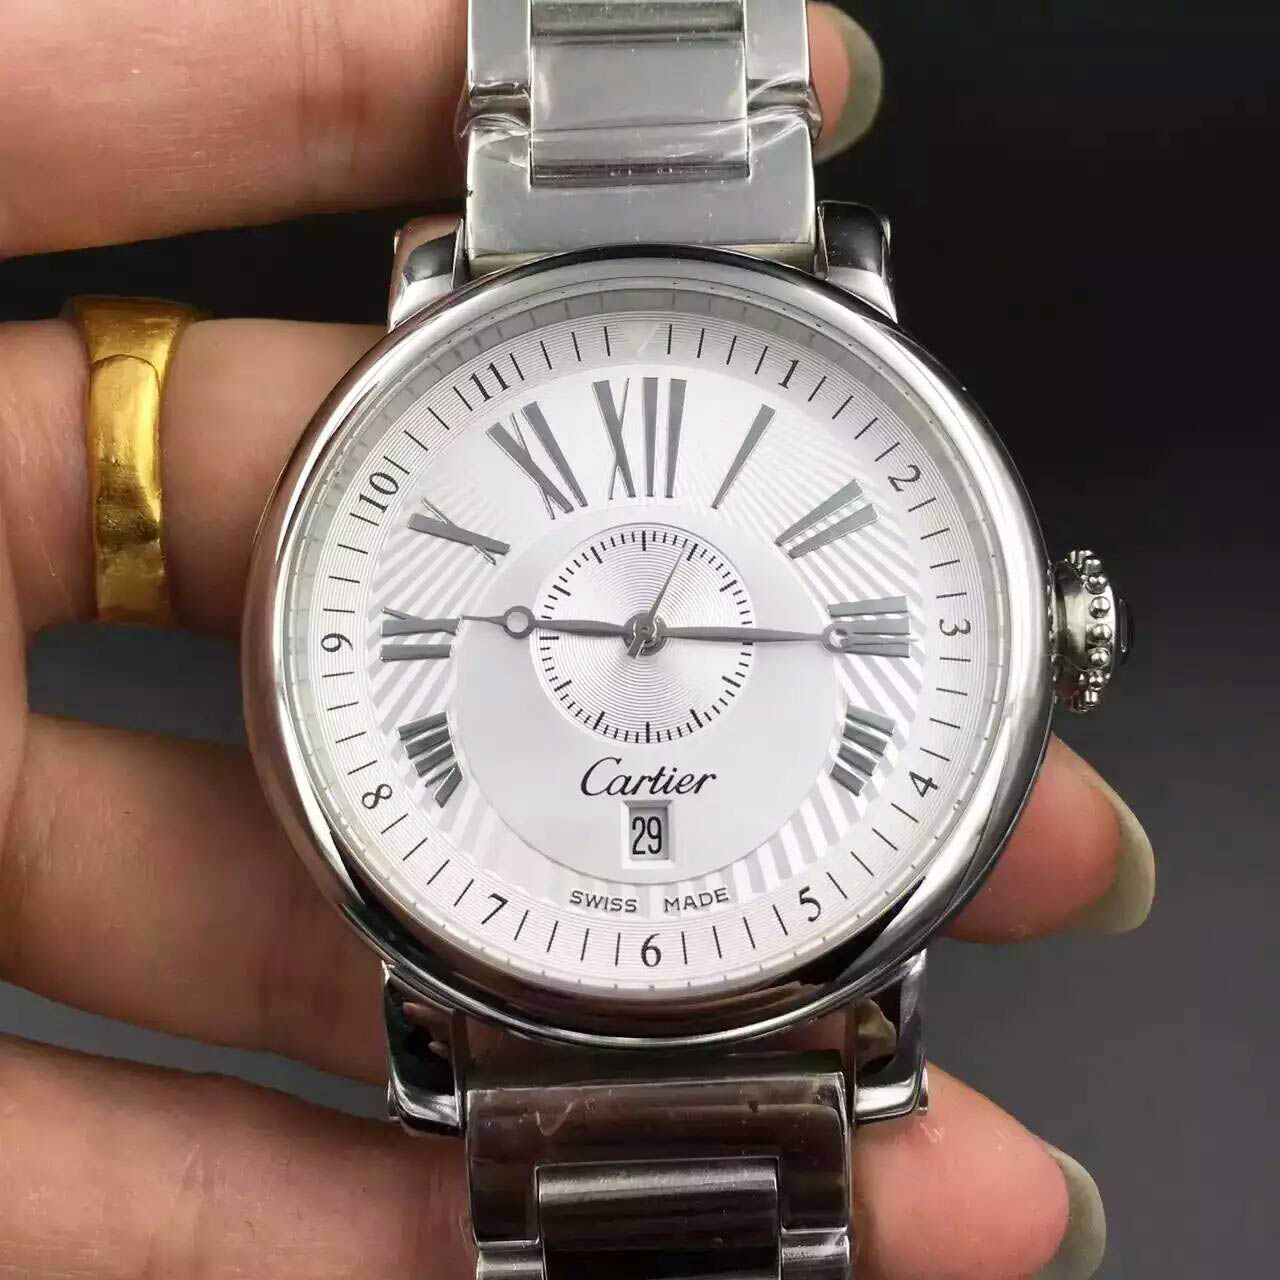 3A新款卡地亞大師承接巴塞爾經典設計 熱門腕錶推薦 1:1手錶